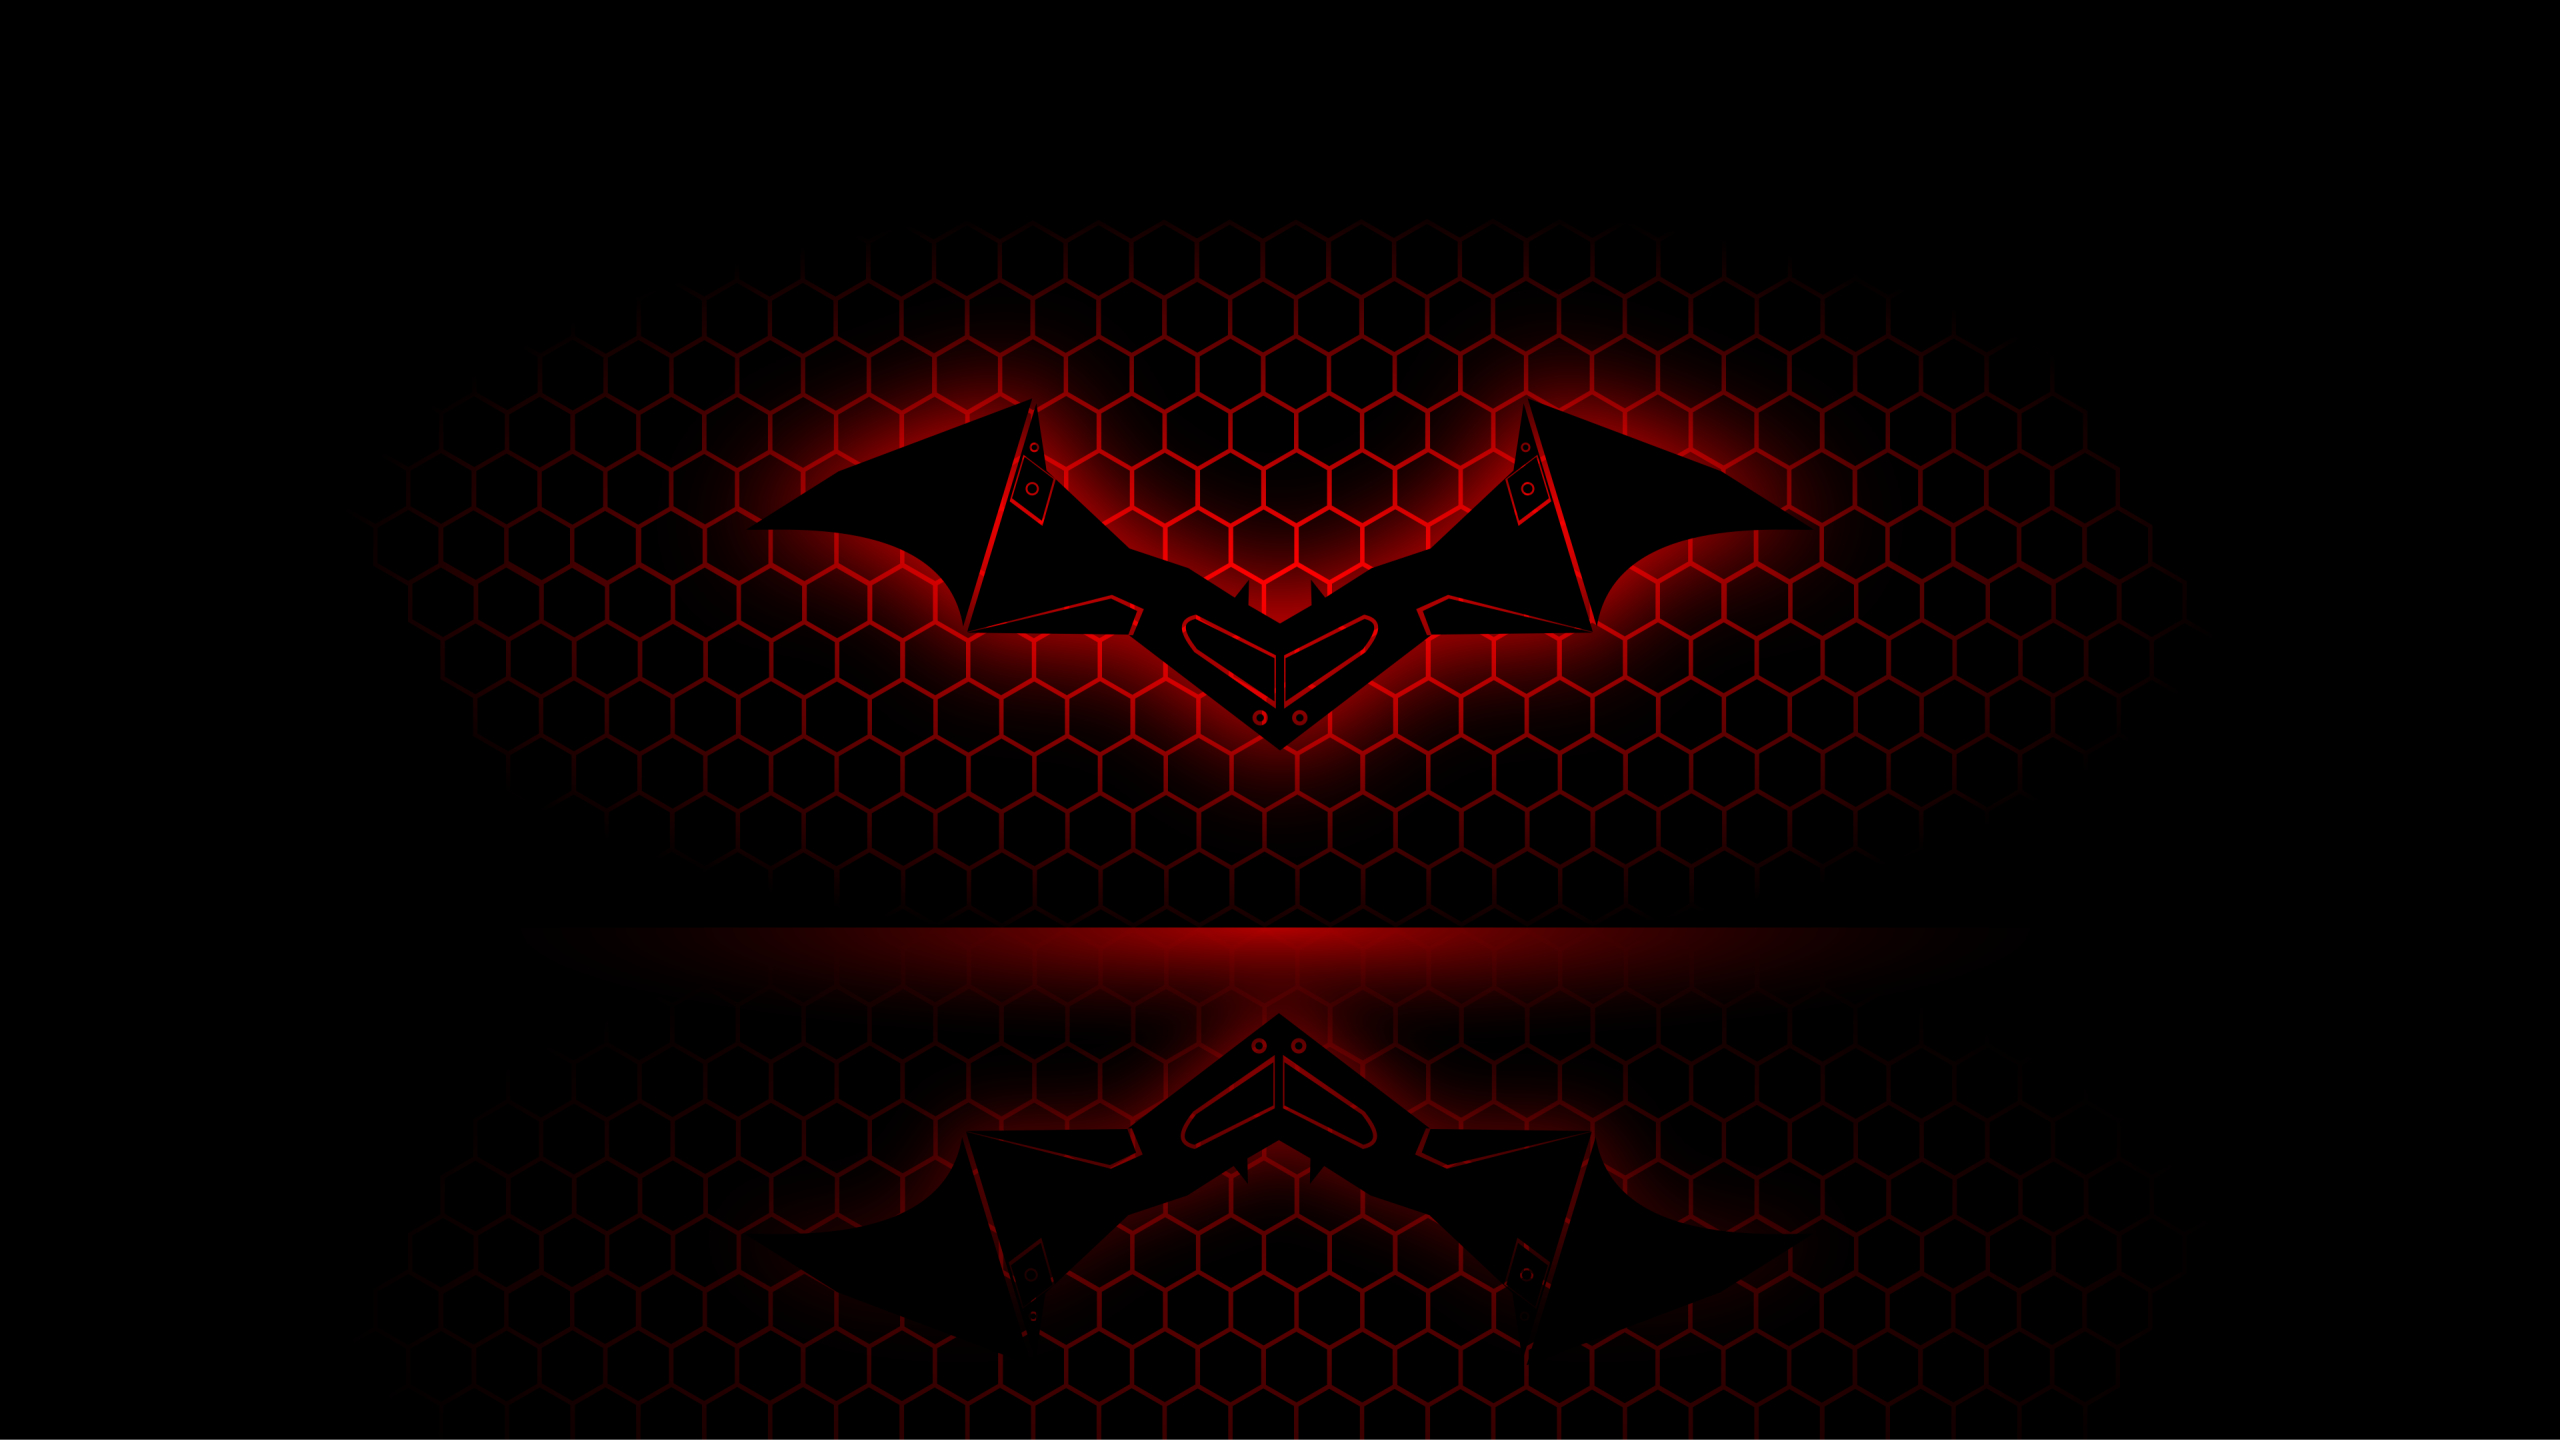 Batman Light Painting Logo Wallpaper  TV  Movies HD Wallpapers   HDwallpapersnet